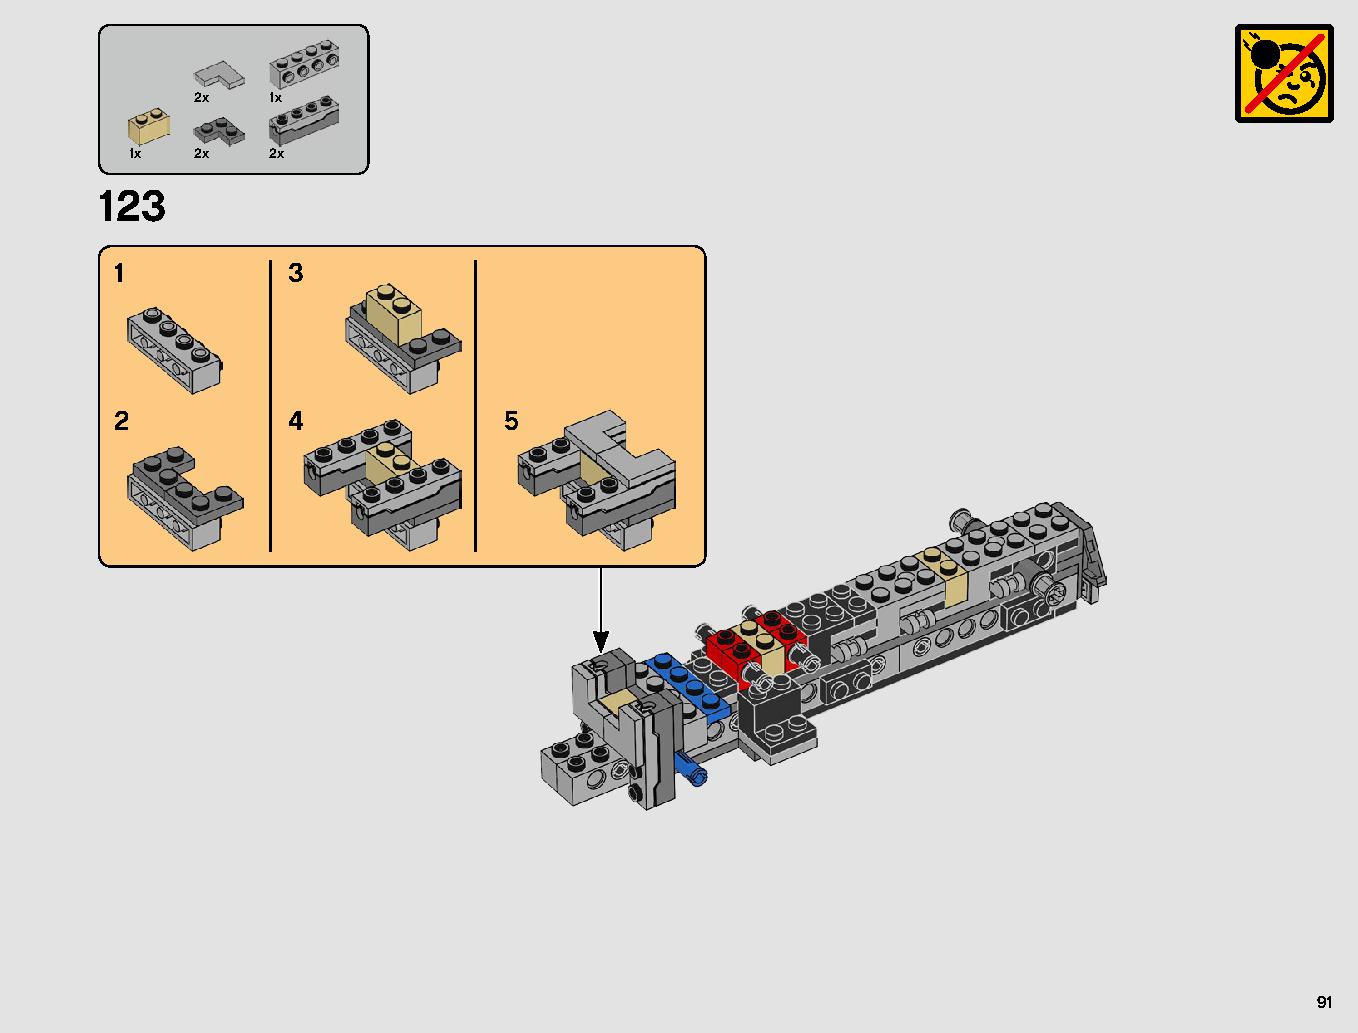 スレーヴl™ – 20周年記念モデル 75243 レゴの商品情報 レゴの説明書・組立方法 91 page